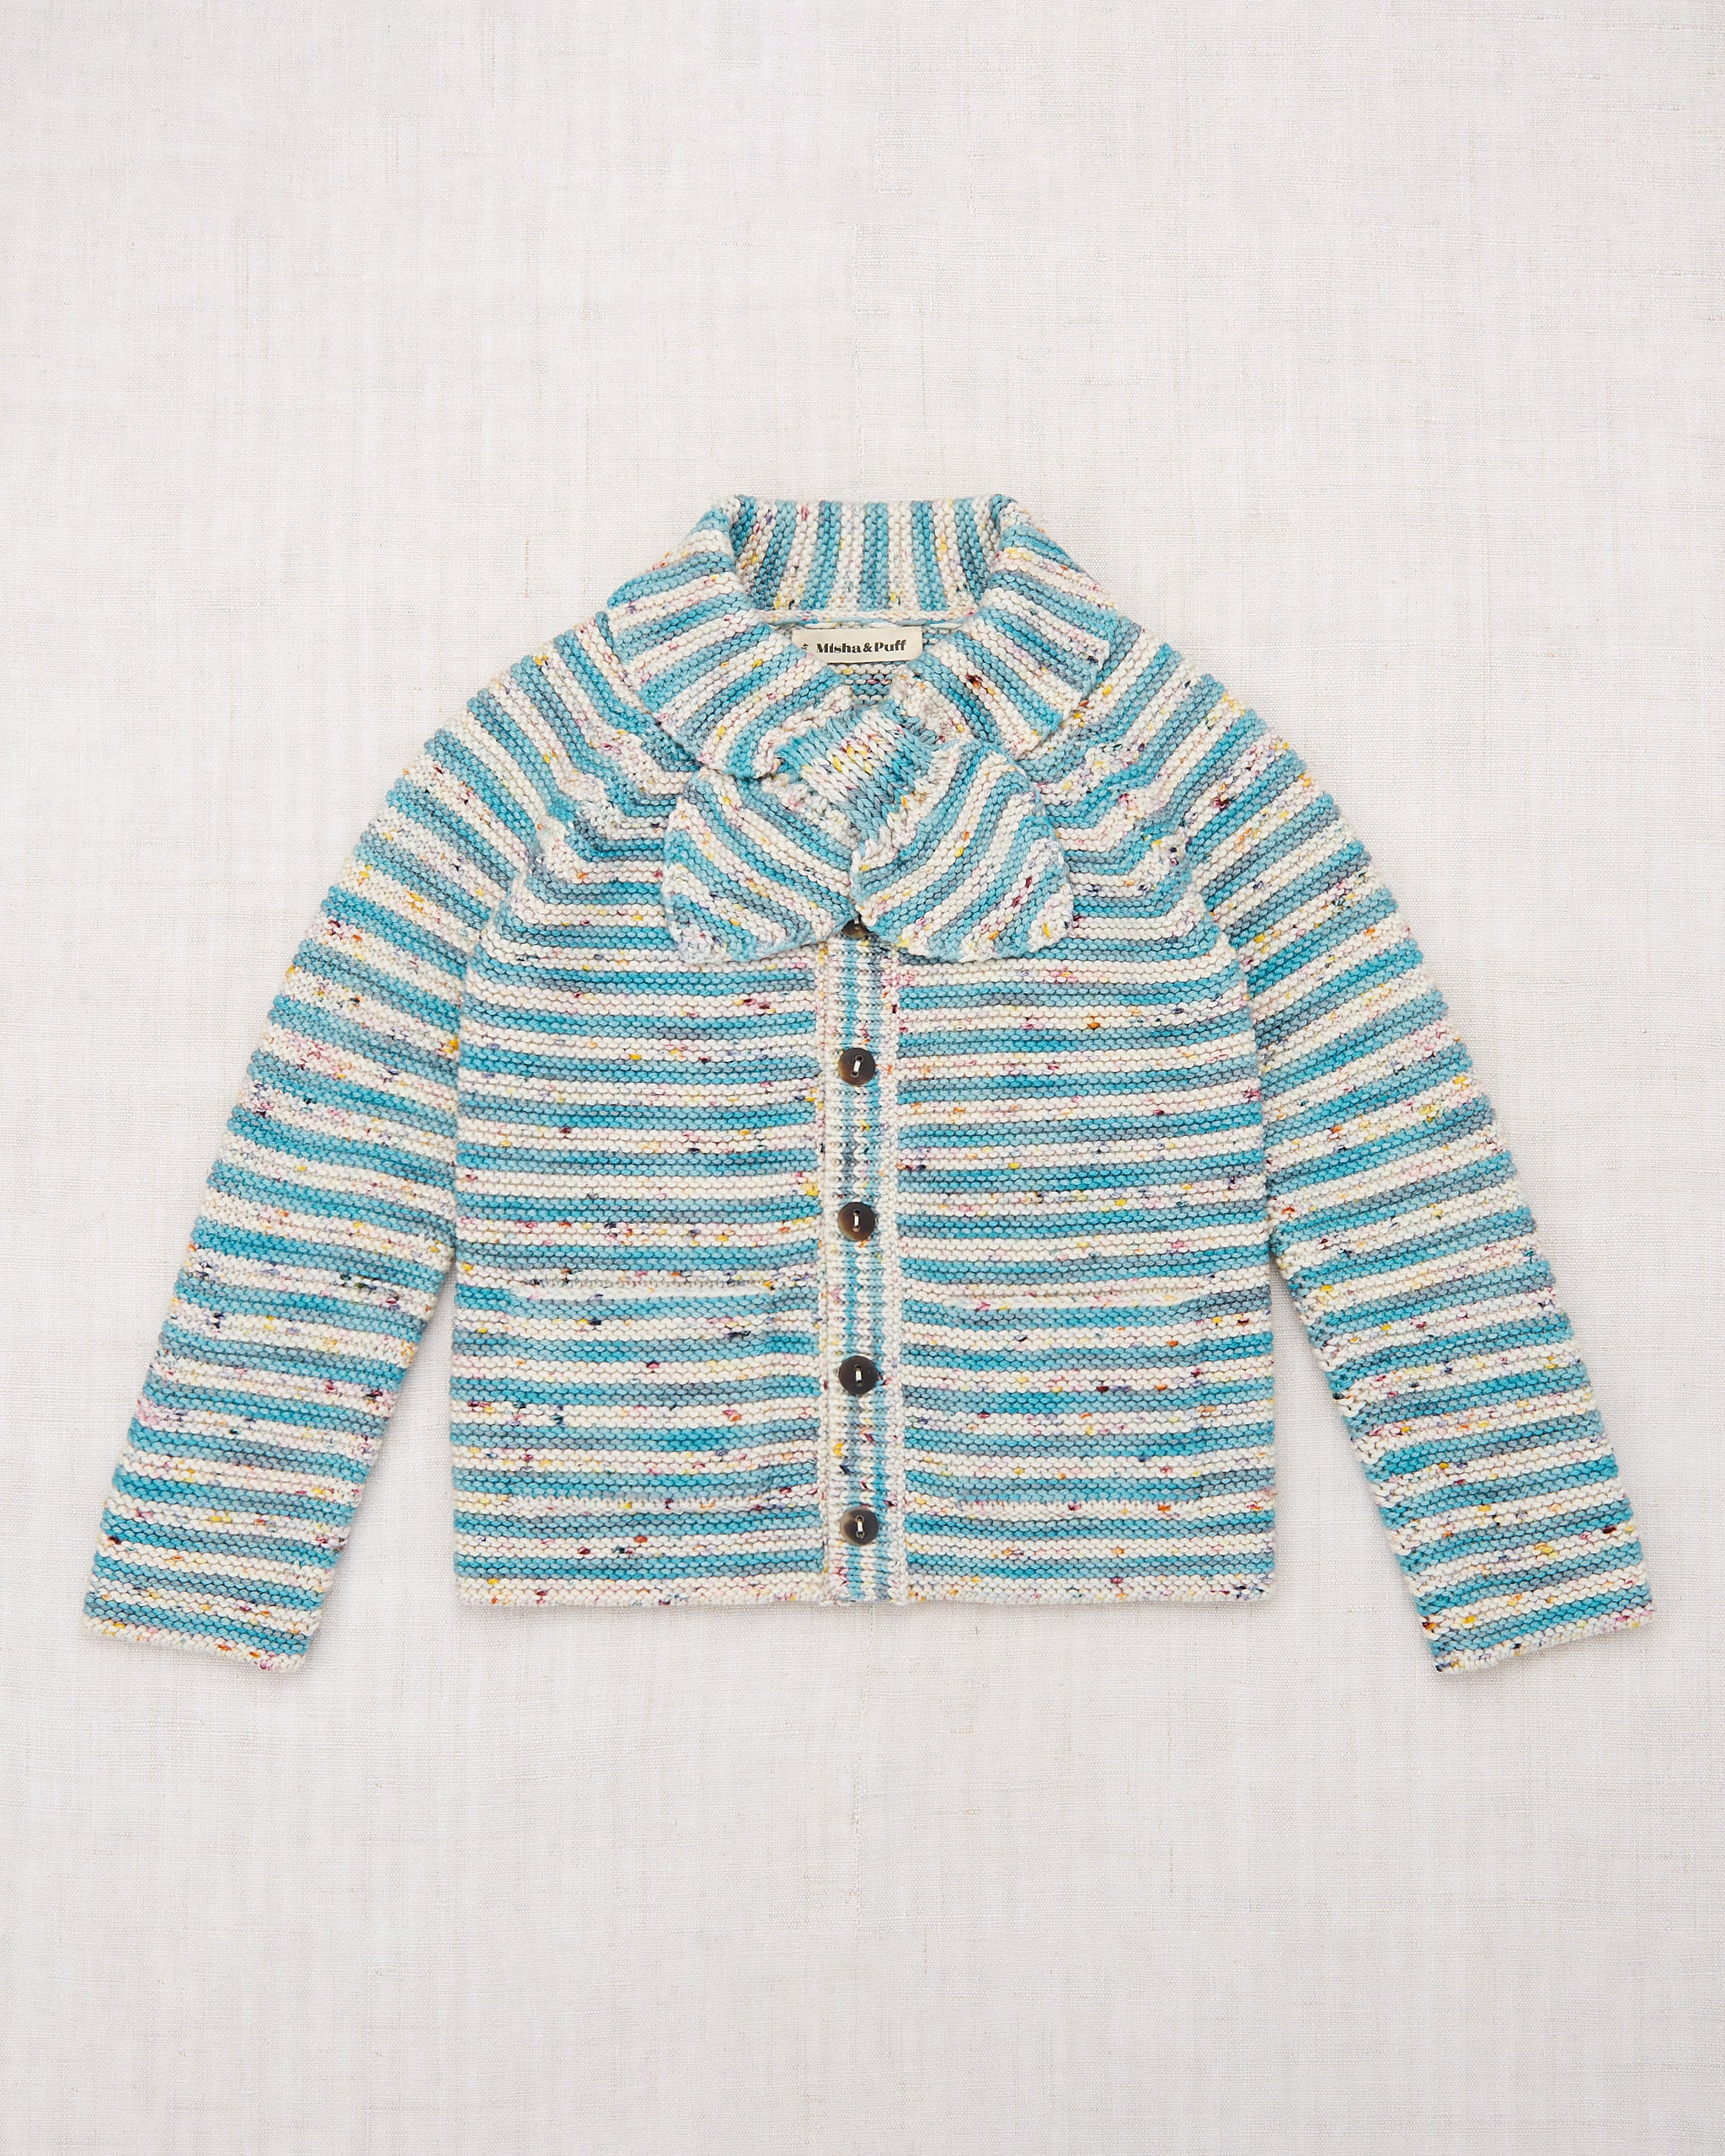 配送料込misha and puff stripe scout sweater 6-7y Tシャツ/カットソー